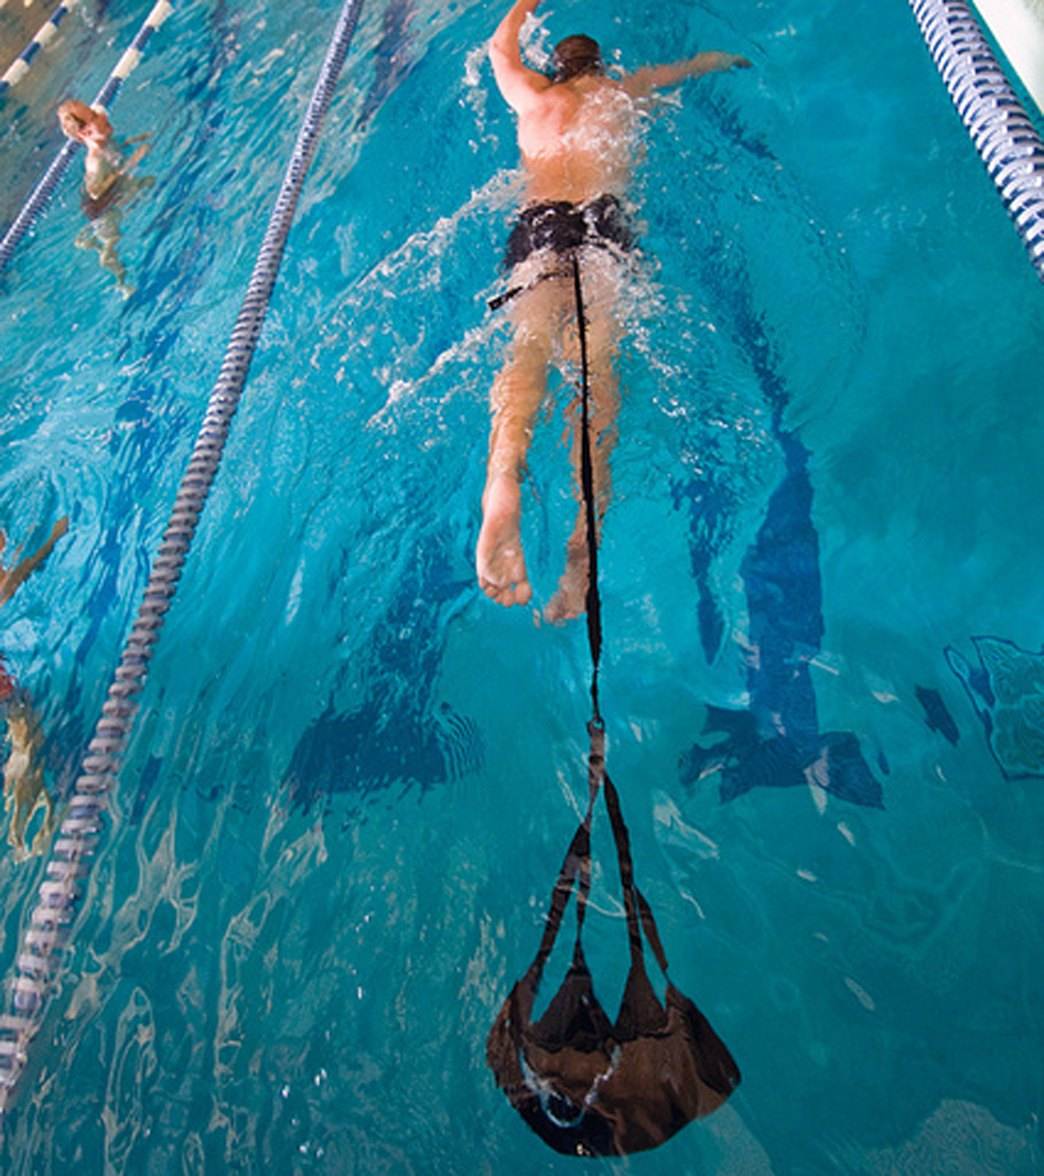 دوره های آموزش شنا در خمینی شهر - کلاس آموزش شنا - آموزش شنا بزرگسالان | آکادمی شنا خمینی شهر